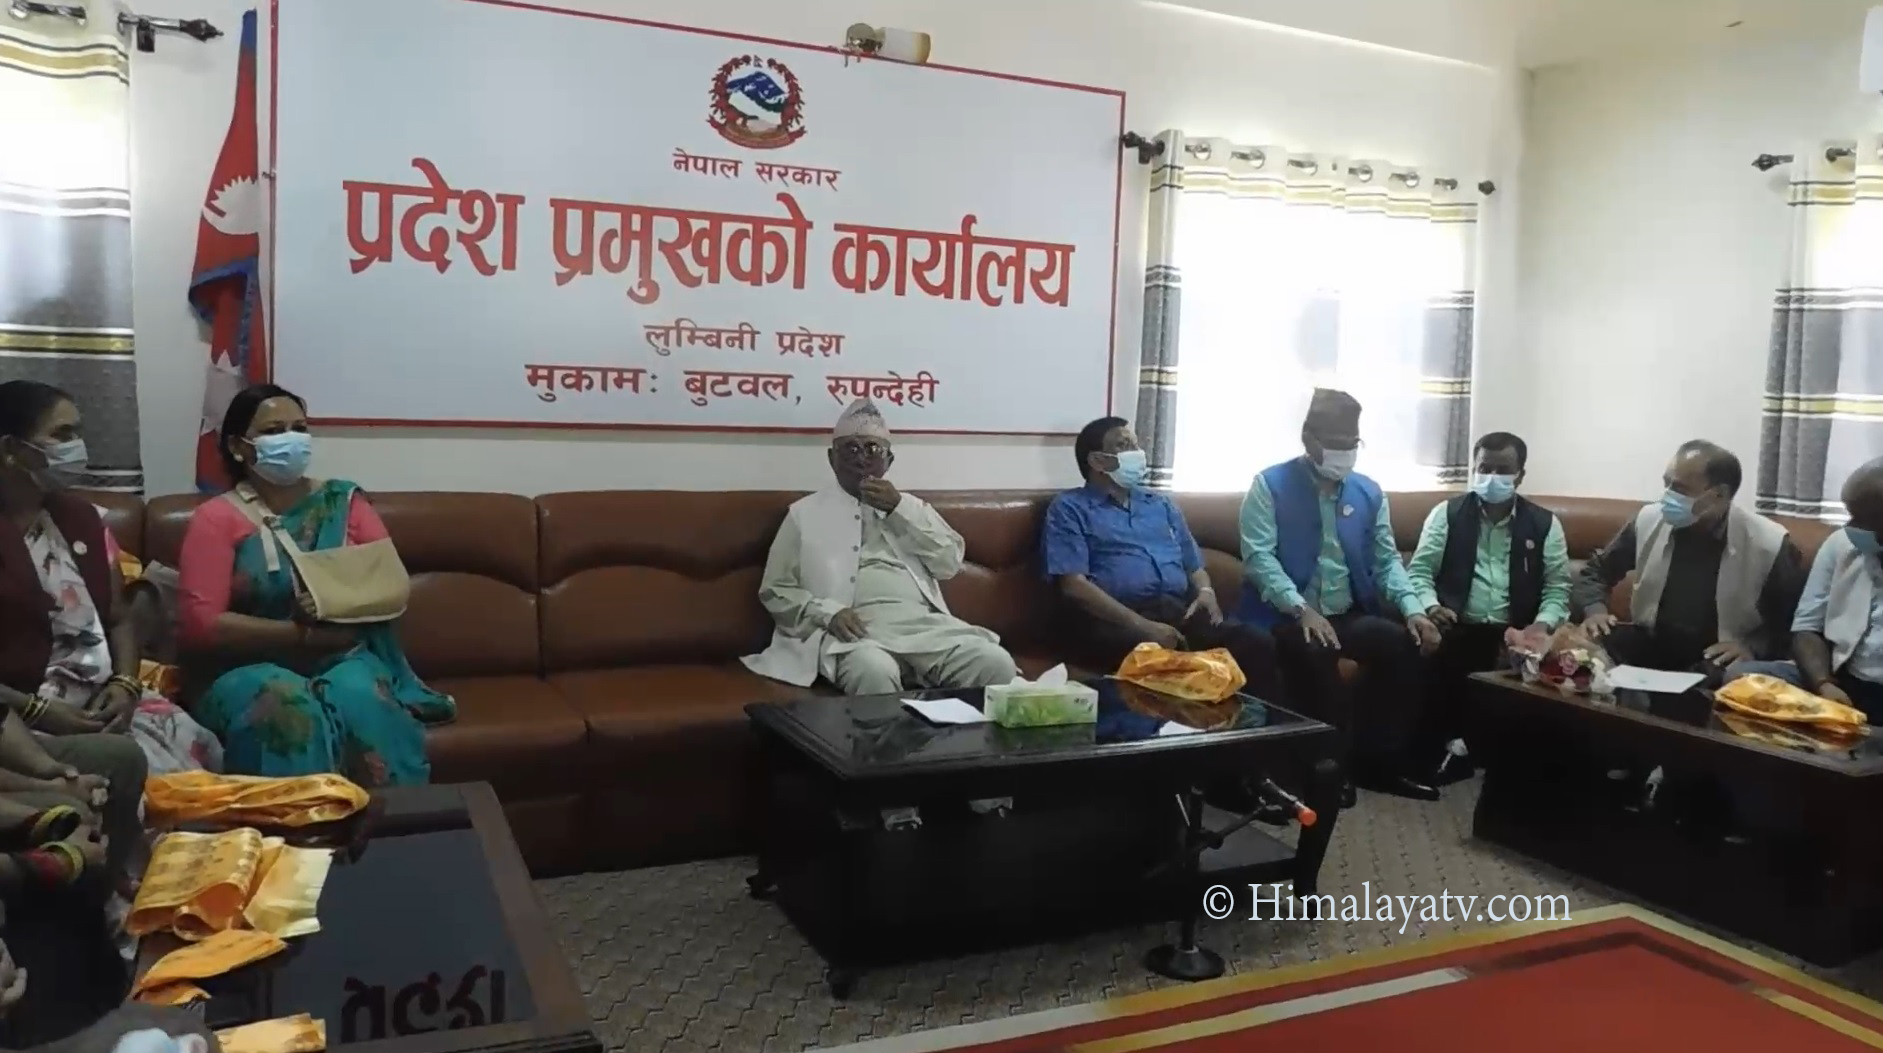 लुम्बिनीमा बहुमतीय सरकार गठन गर्न ४१ सांसदले बुझाए प्रदेश प्रमुखलाई हस्ताक्षर (भिडियो रिपोर्टसहित)